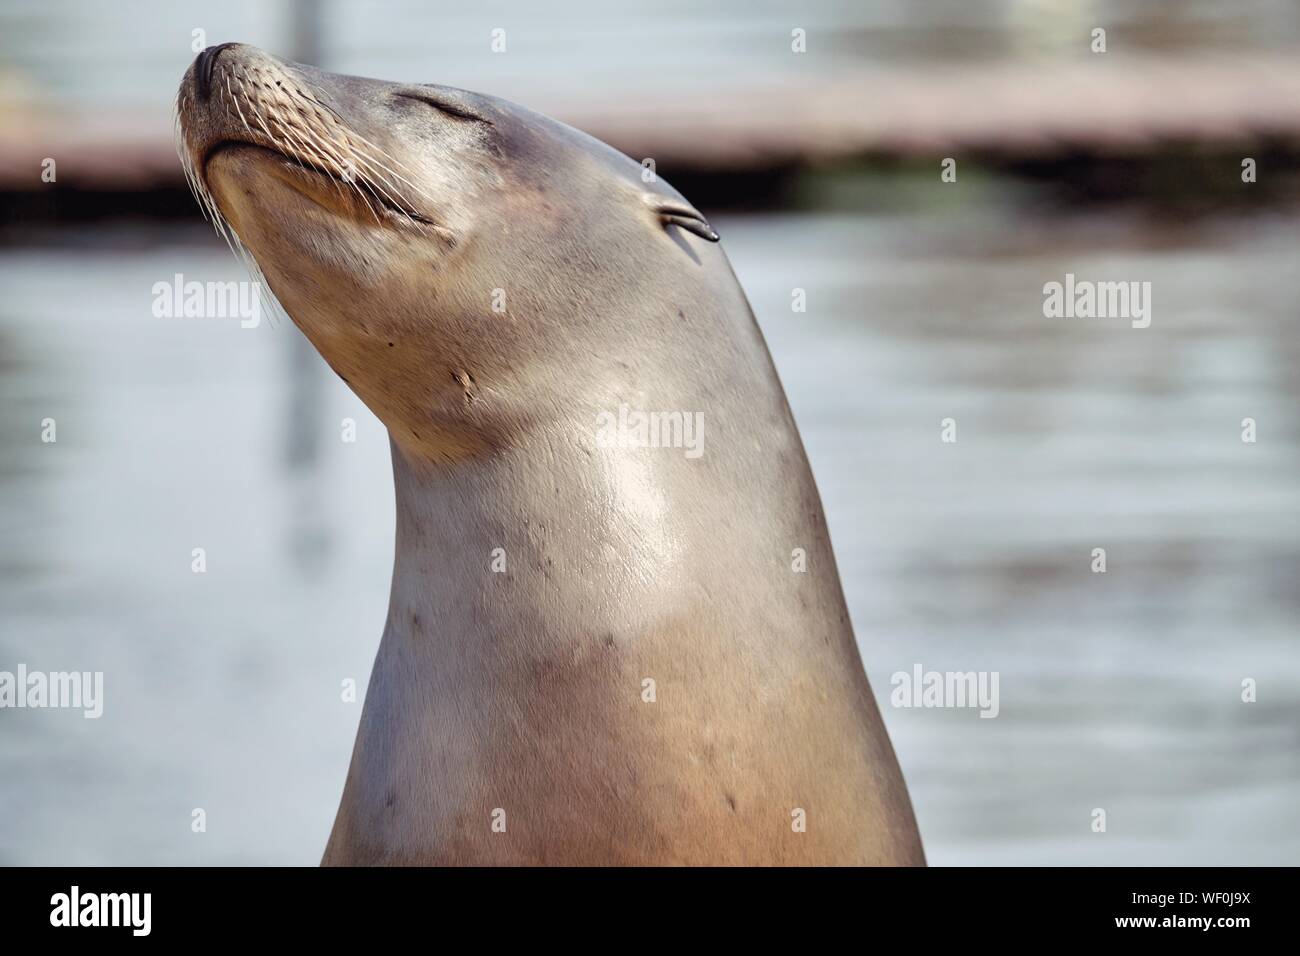 Close-up de lobo de mar con los ojos cerrados Foto de stock